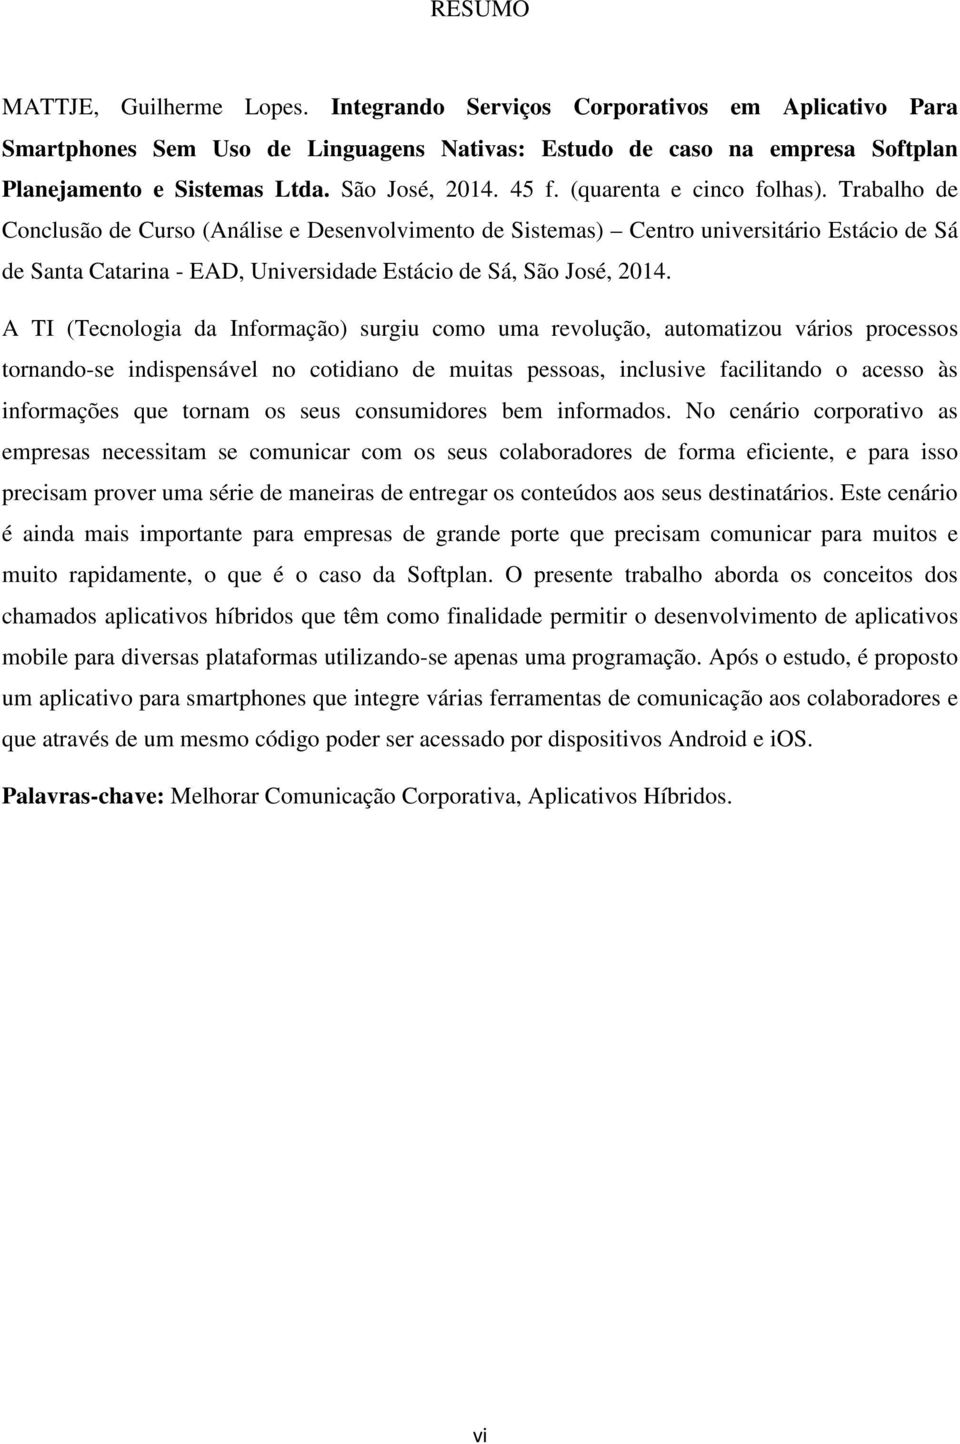 Trabalho de Conclusão de Curso (Análise e Desenvolvimento de Sistemas) Centro universitário Estácio de Sá de Santa Catarina - EAD, Universidade Estácio de Sá, São José, 2014.